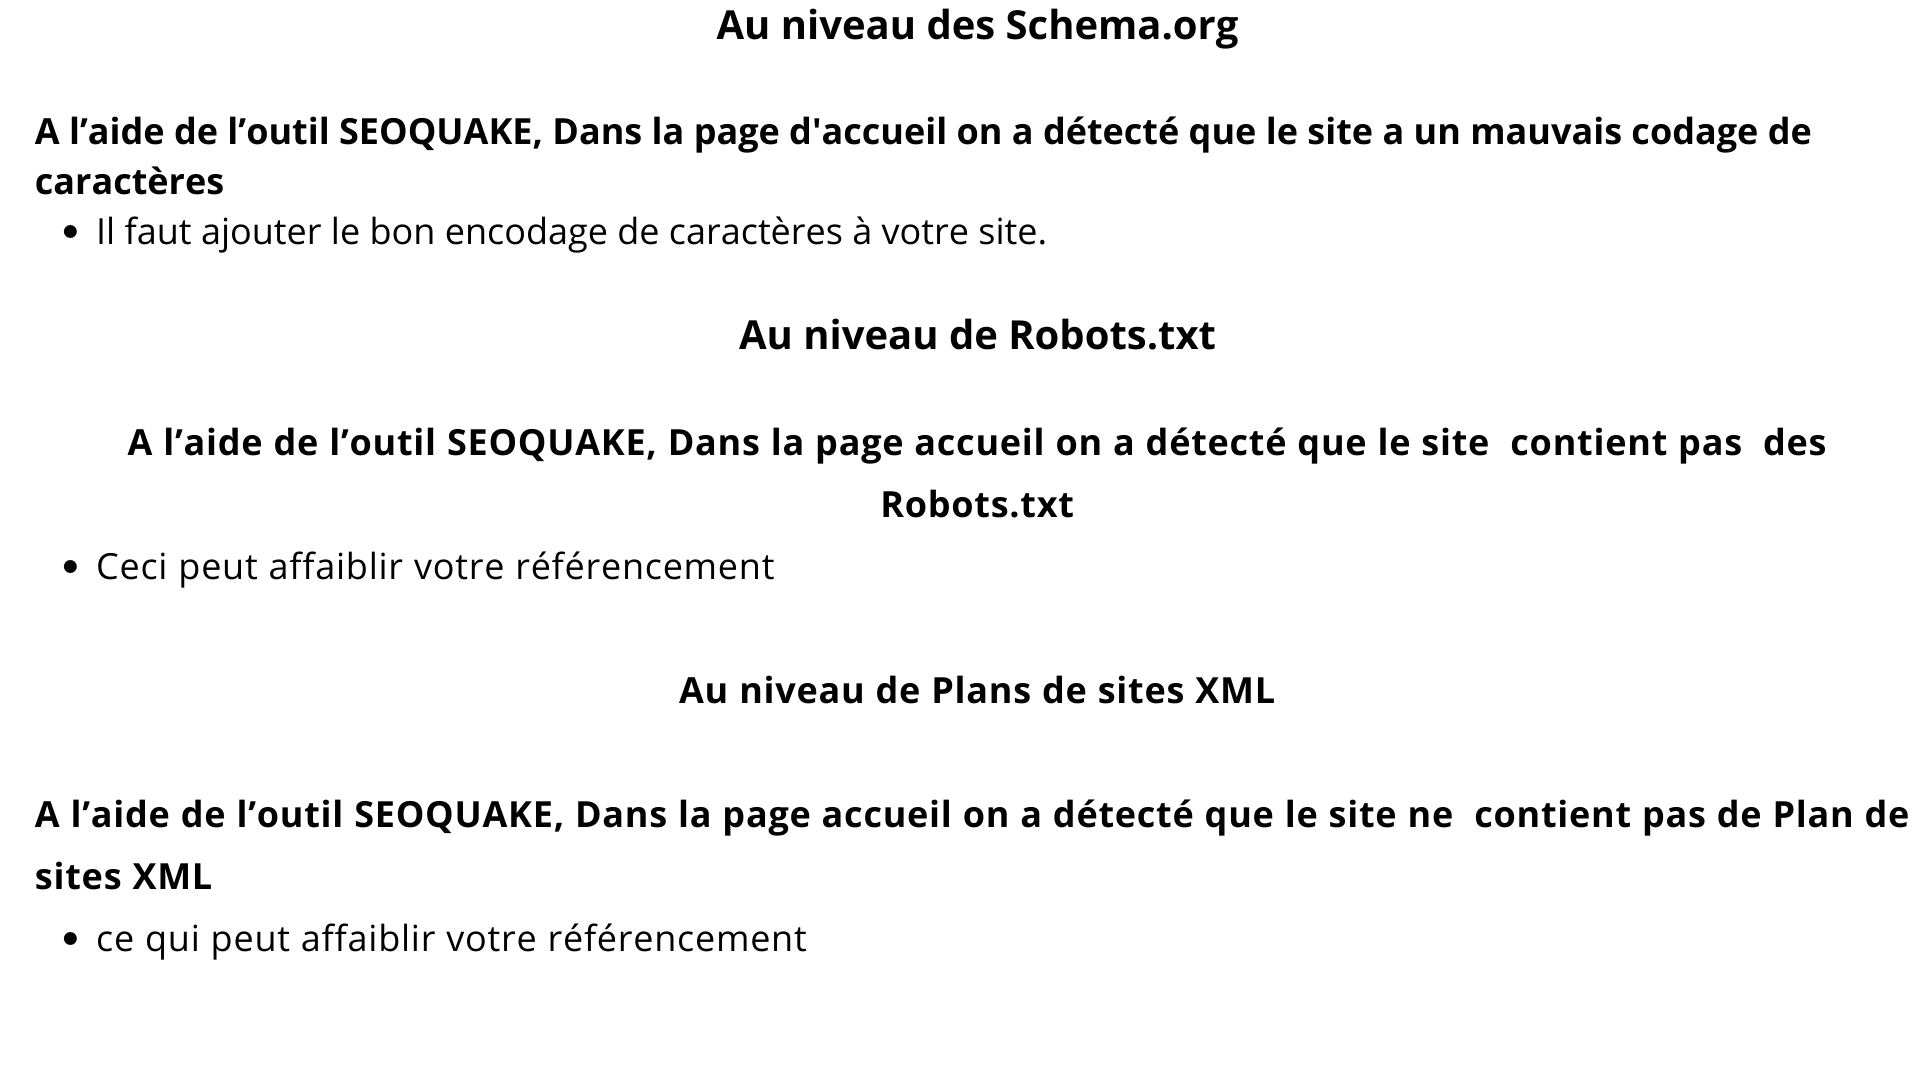 Au niveau des Schema.org

A l'aide de I'outil SEOQUAKE, Dans la page d'accueil on a détecté que le site a un mauvais codage de
caractéres
e || faut ajouter le bon encodage de caractères à votre site.

Au niveau de Robots.txt

A l'aide de l'outil SEOQUAKE, Dans la page accueil on a détecté que le site contient pas des
Robots.txt

e Ceci peut affaiblir votre référencement
Au niveau de Plans de sites XML
A l'aide de l'outil SEOQUAKE, Dans la page accueil on a détecté que le site ne contient pas de Plan de

sites XML

e ce qui peut affaiblir votre référencement